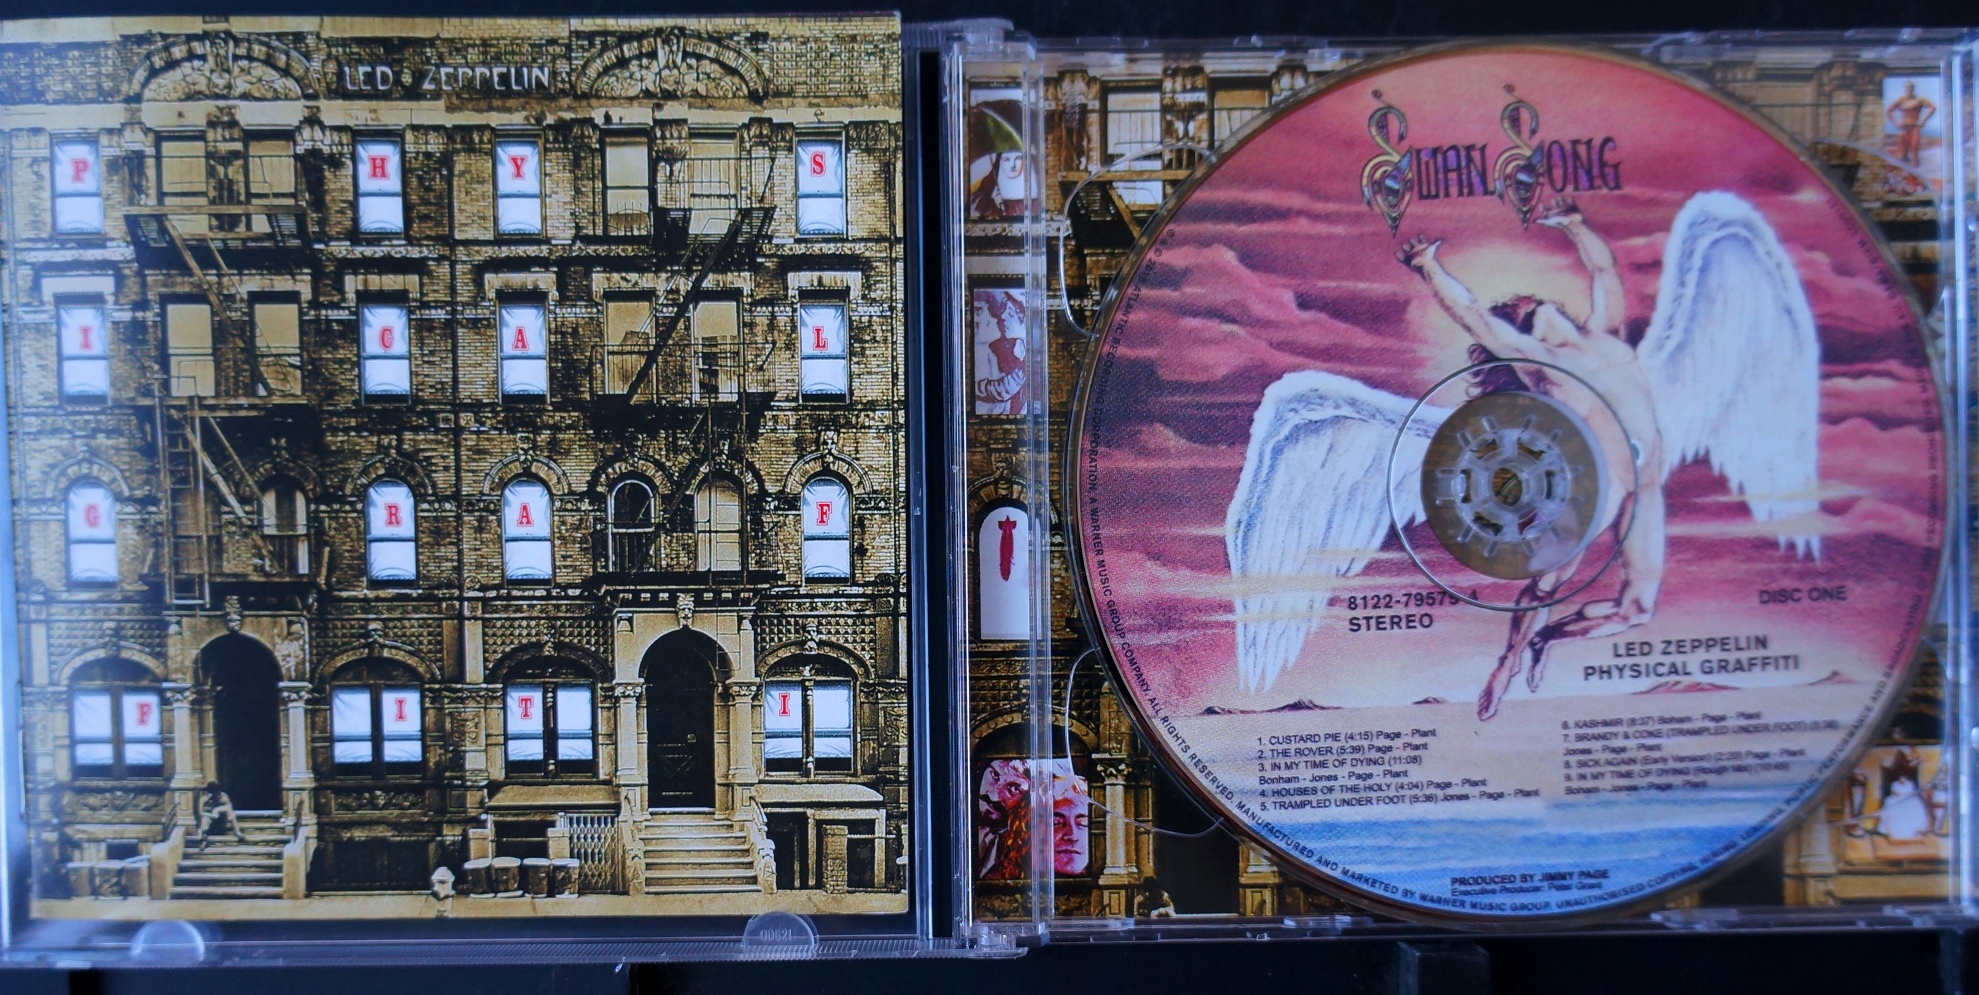 Led Zeppelin IV by Led Zeppelin CD - in jewel case